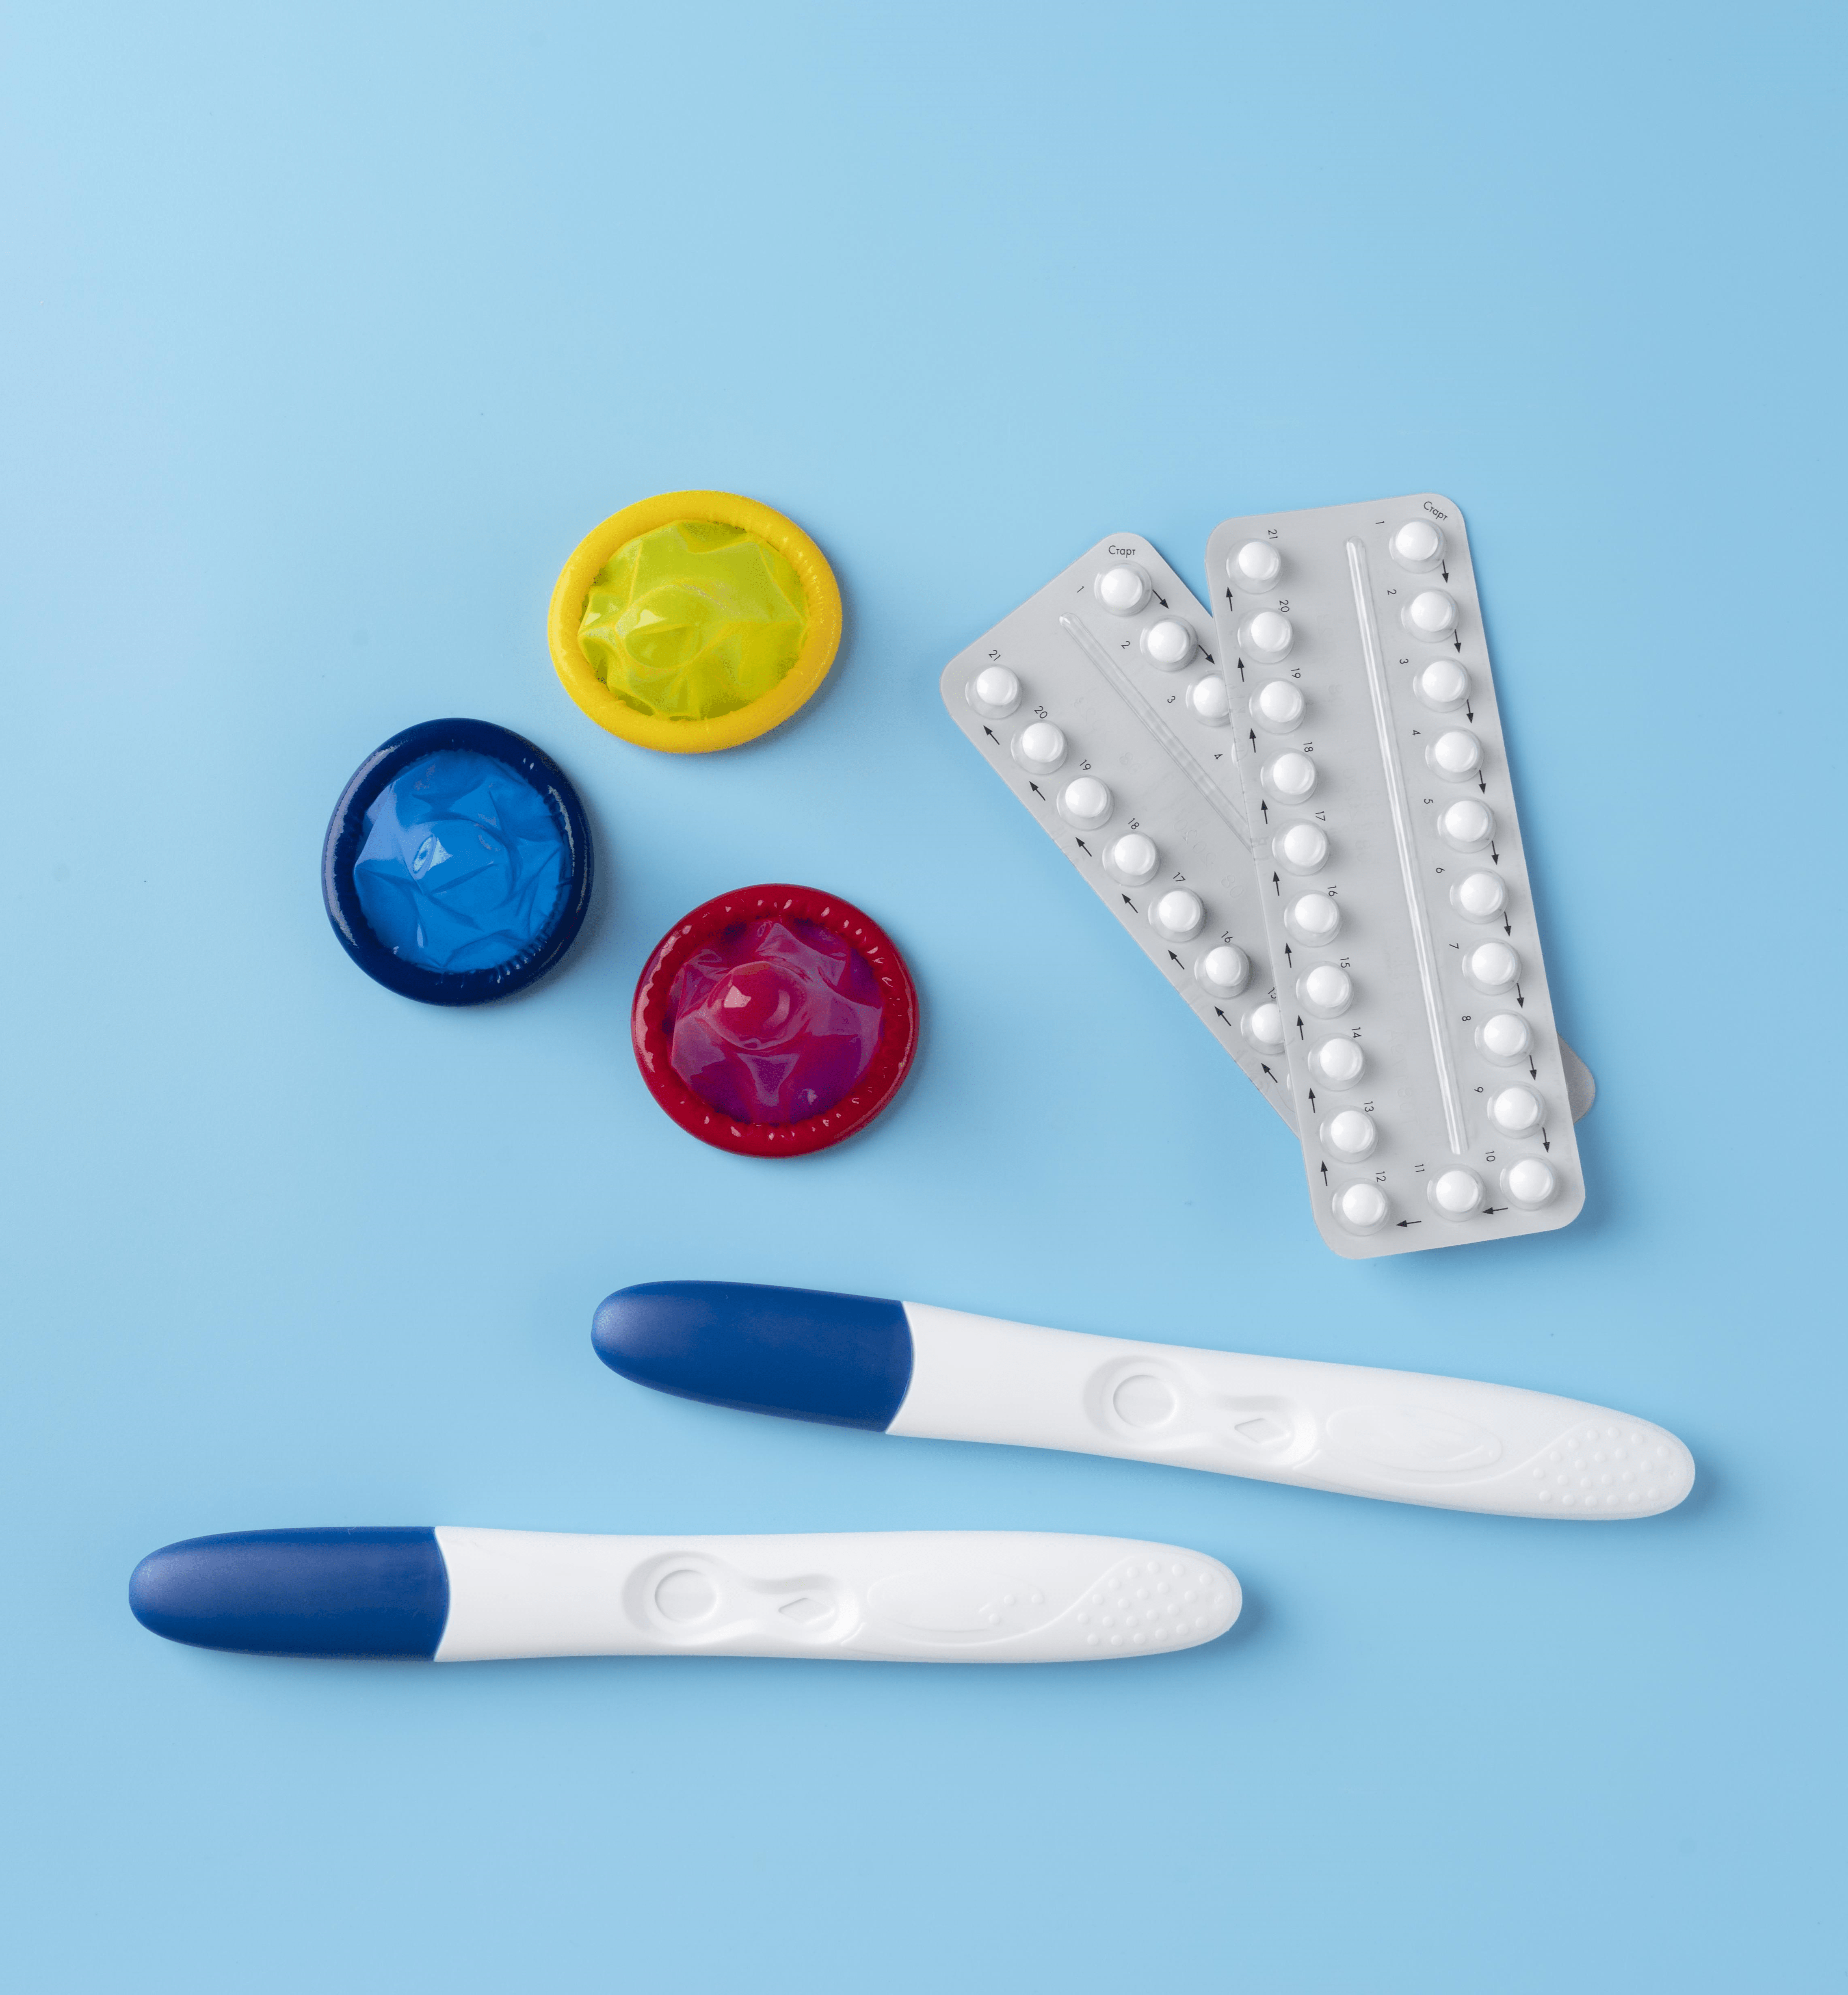 Metodos anticonceptivos